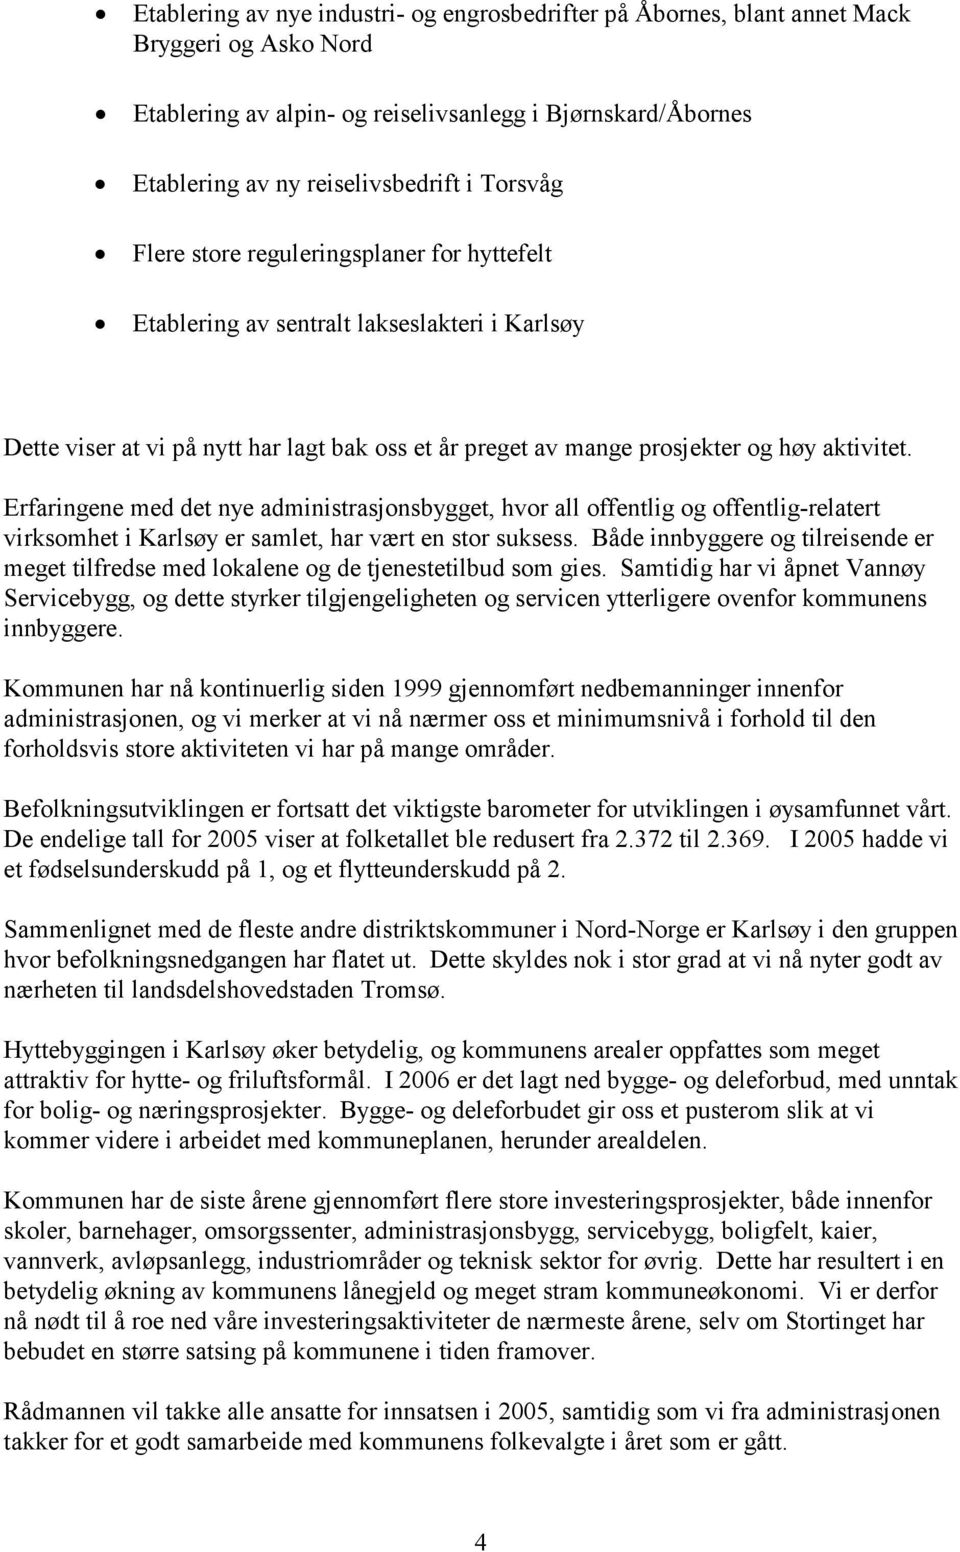 Erfaringene med det nye administrasjonsbygget, hvor all offentlig og offentlig-relatert virksomhet i Karlsøy er samlet, har vært en stor suksess.